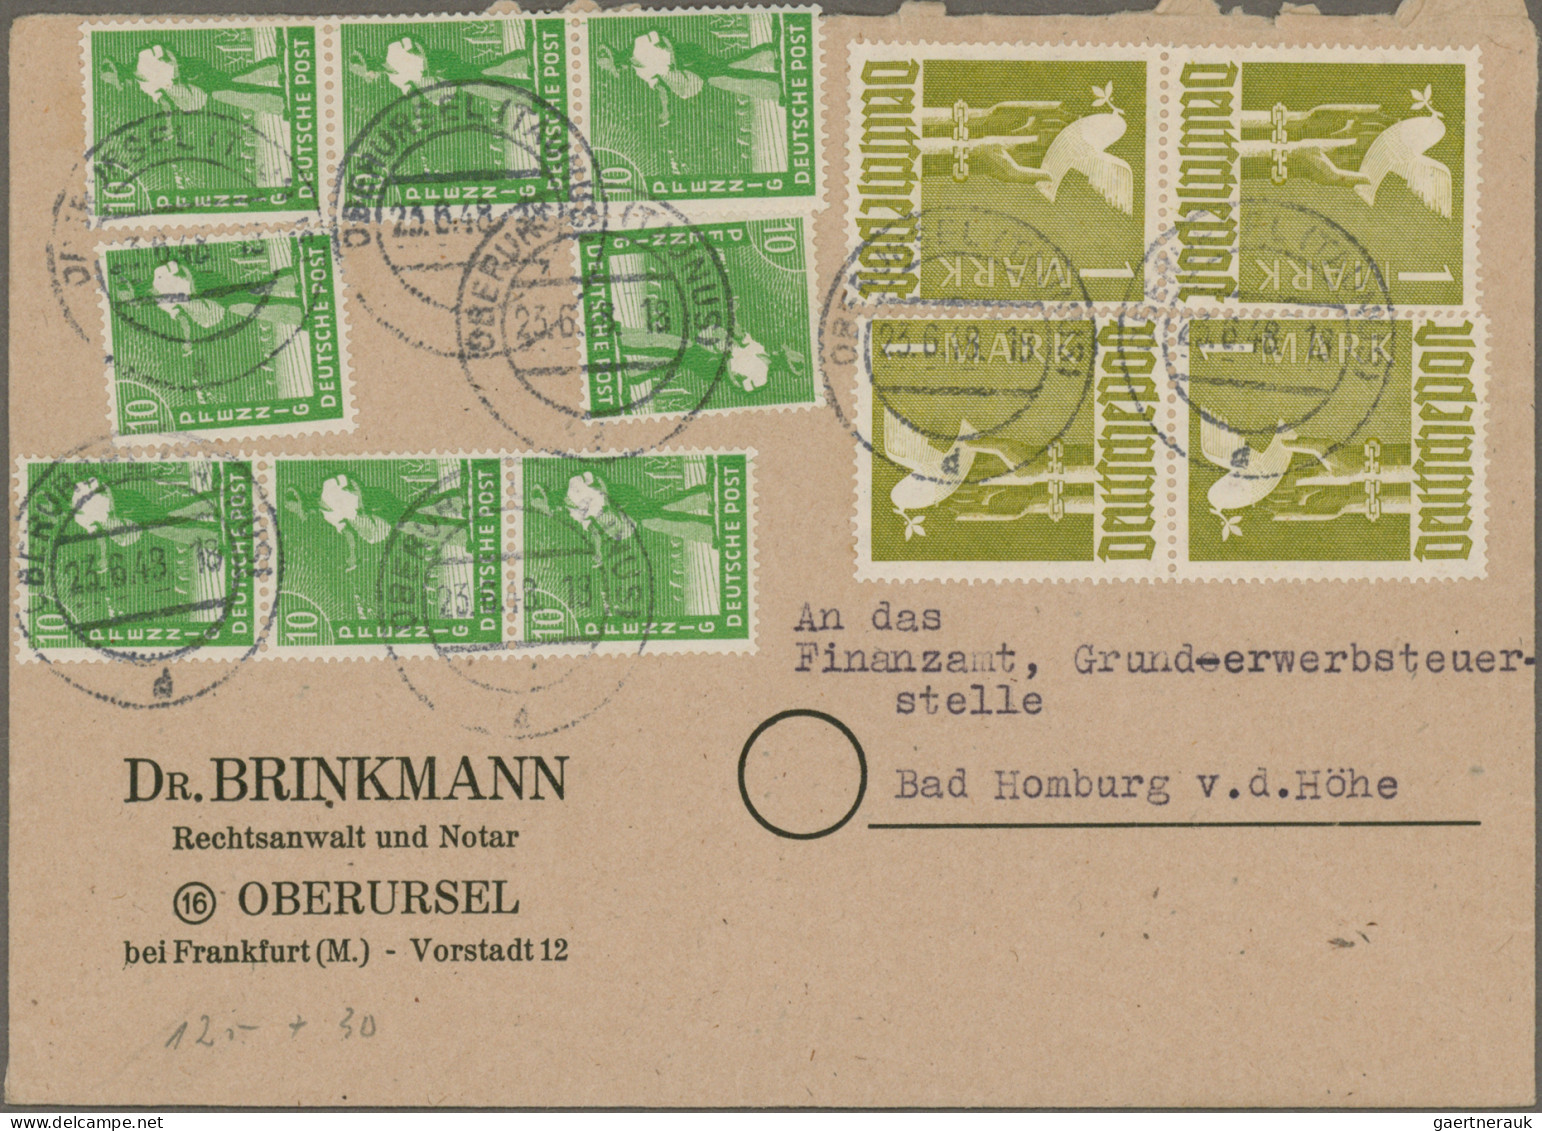 Deutschland nach 1945: 1945/1999, vielseitige Partie von ca. 116 Briefen und Kar